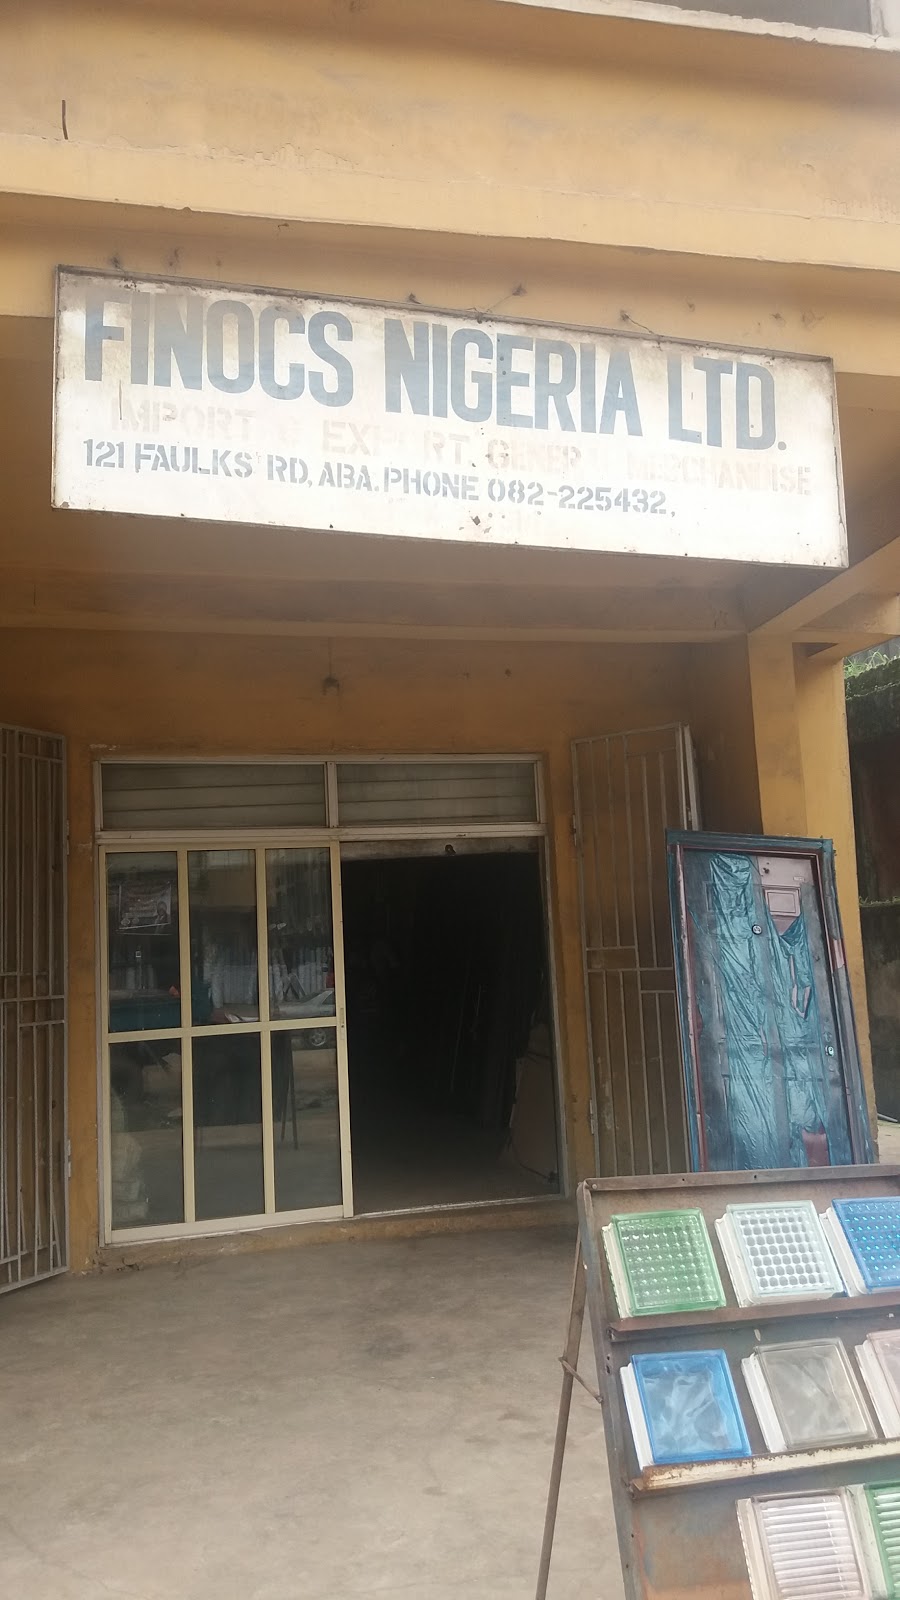 Finocs Nigeria Ltd.